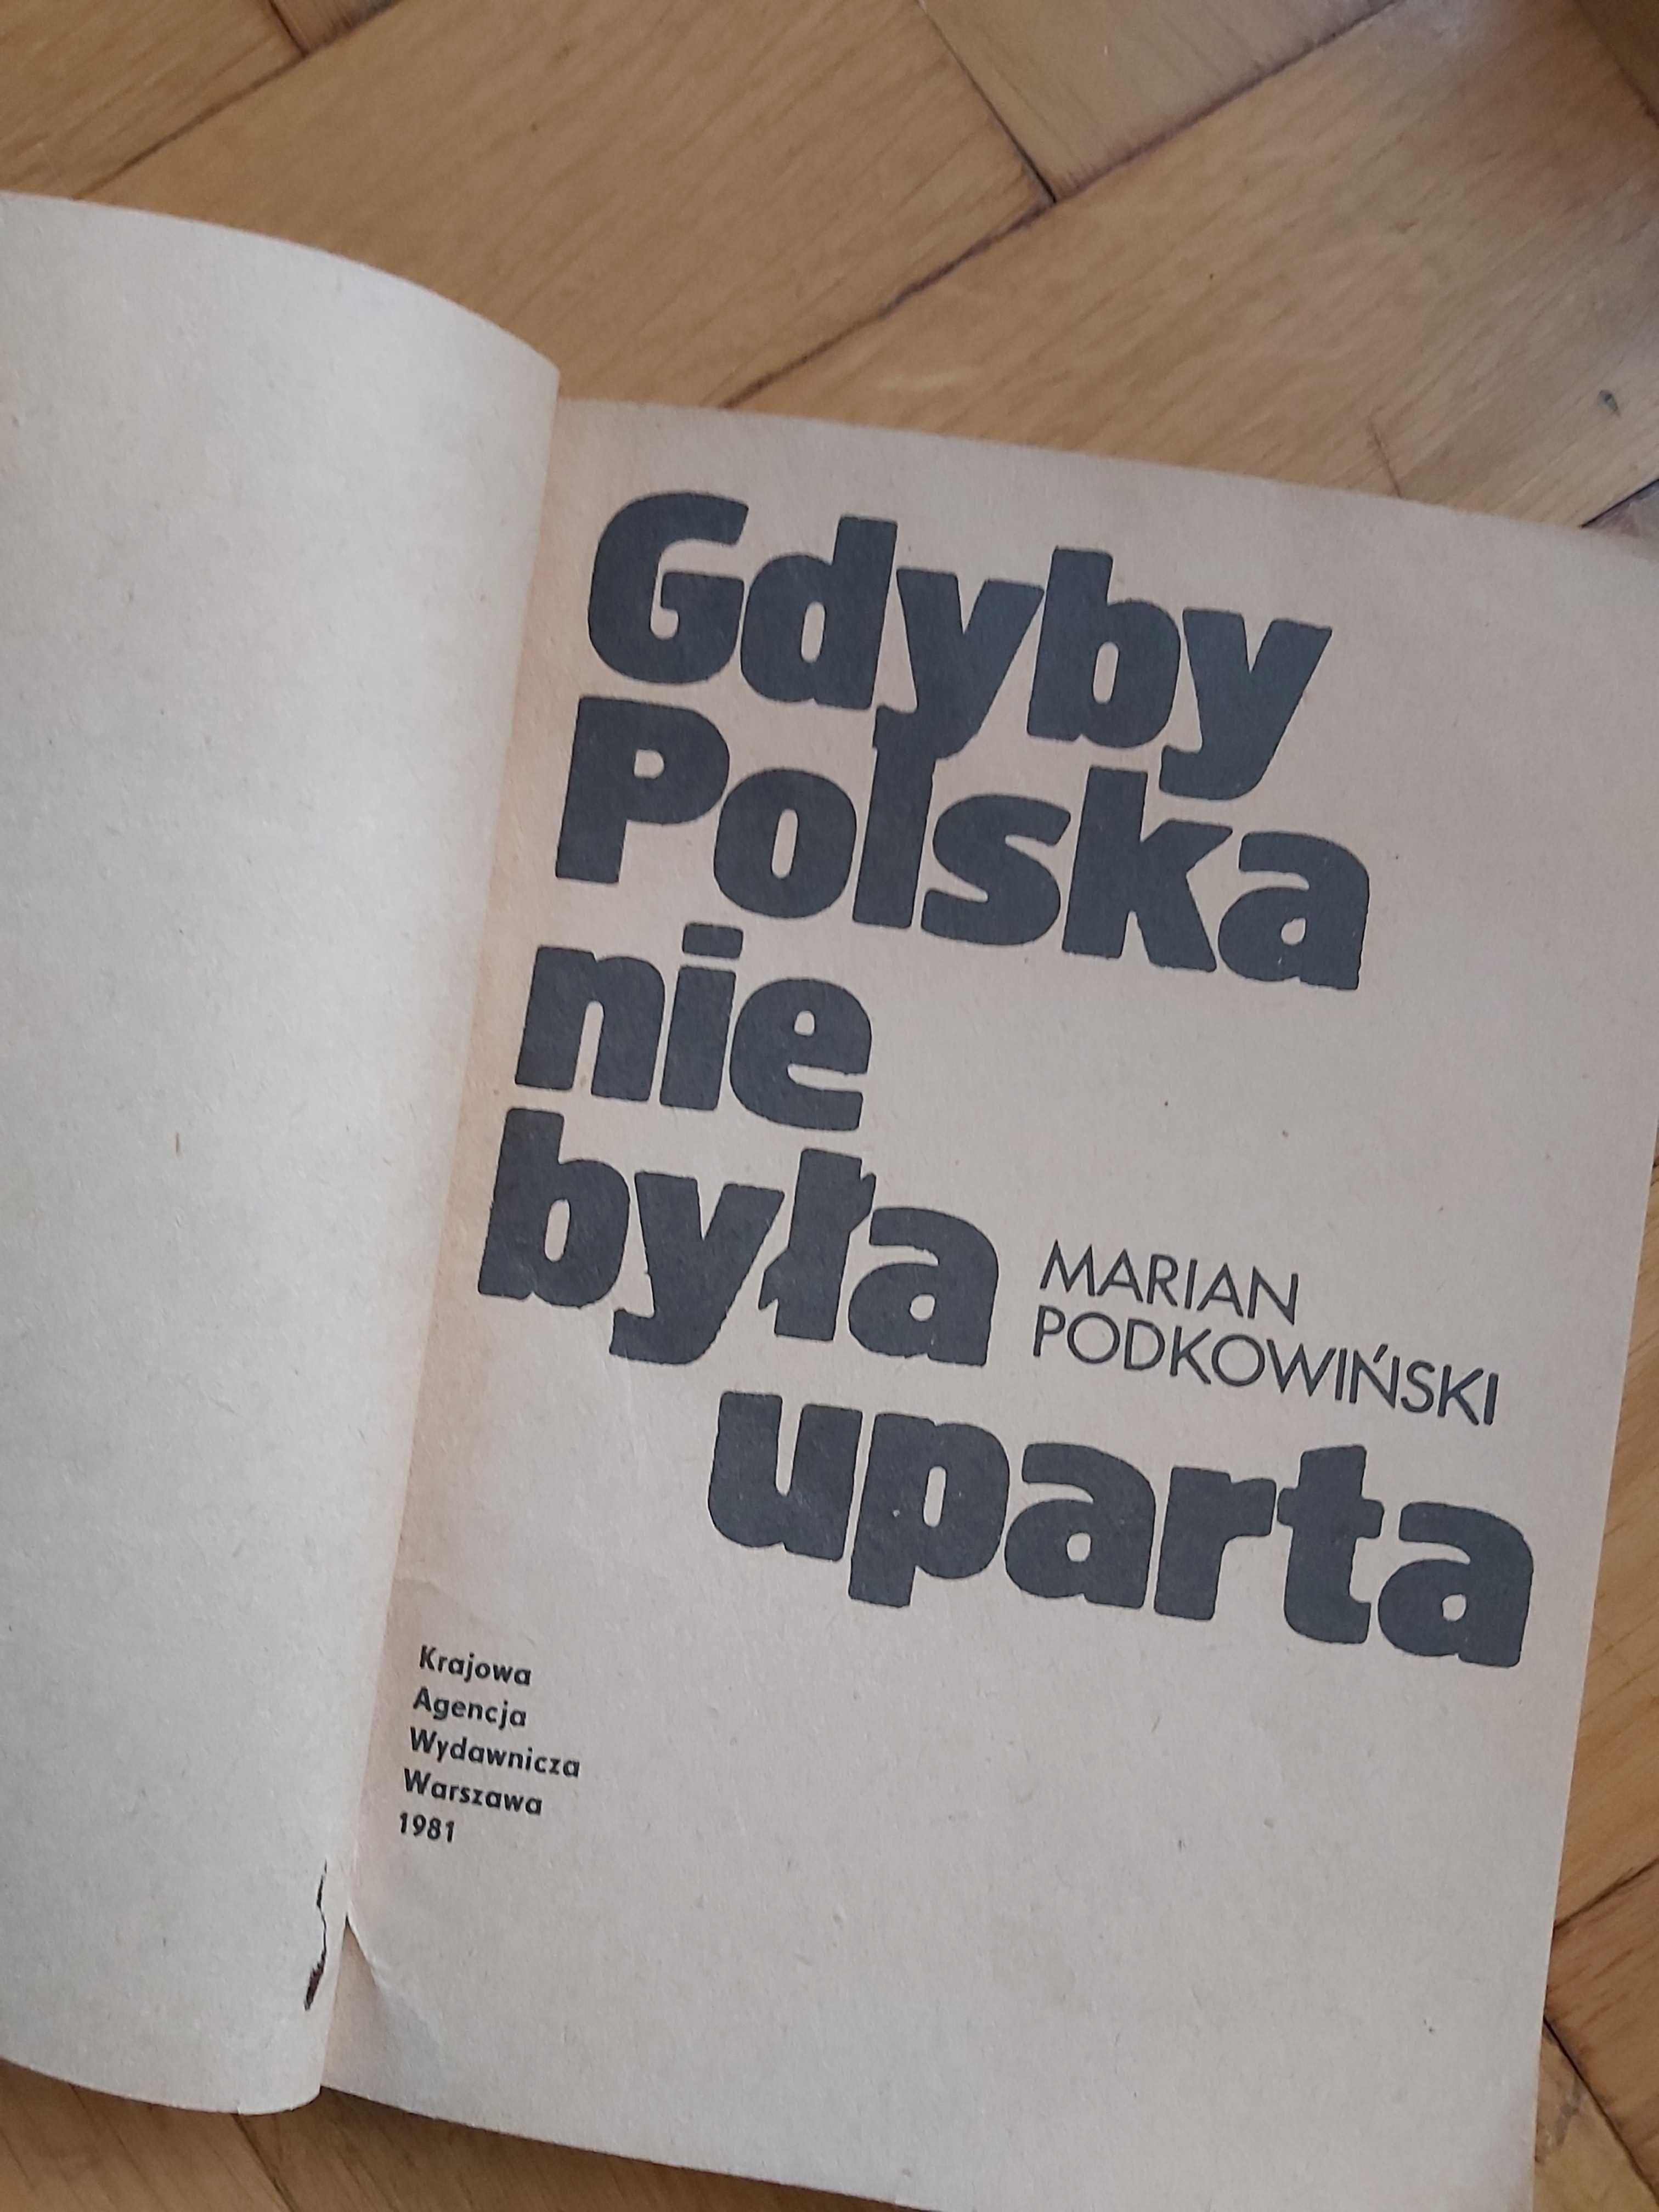 Ksiazanka Gdyby Polska nie byla uparta M. Podkowinski